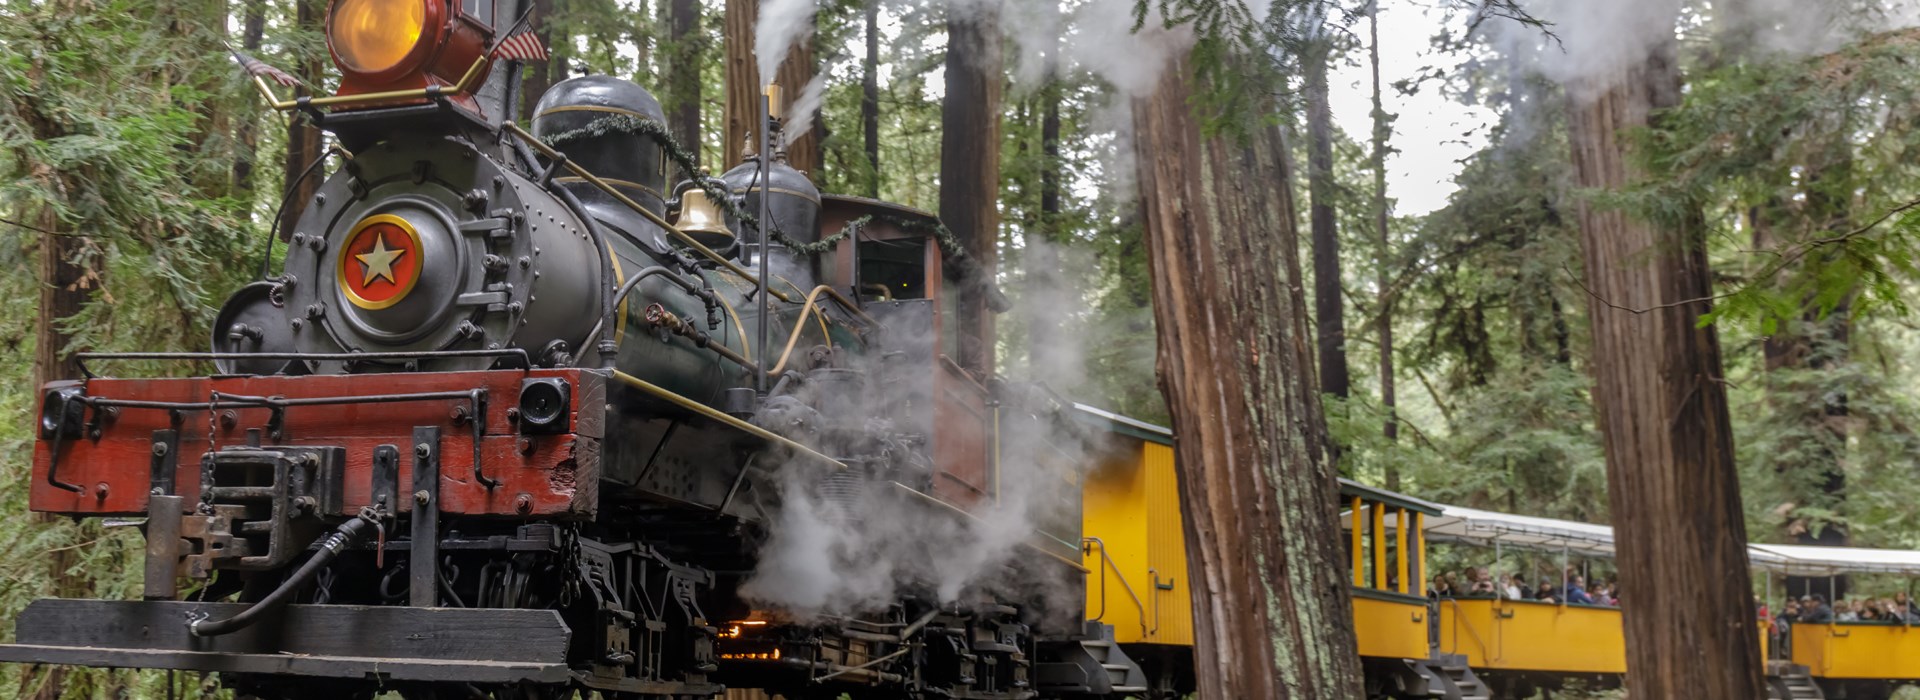 Visiter Le parc d’Etat Henry Cowell Redwoods - Etats-Unis